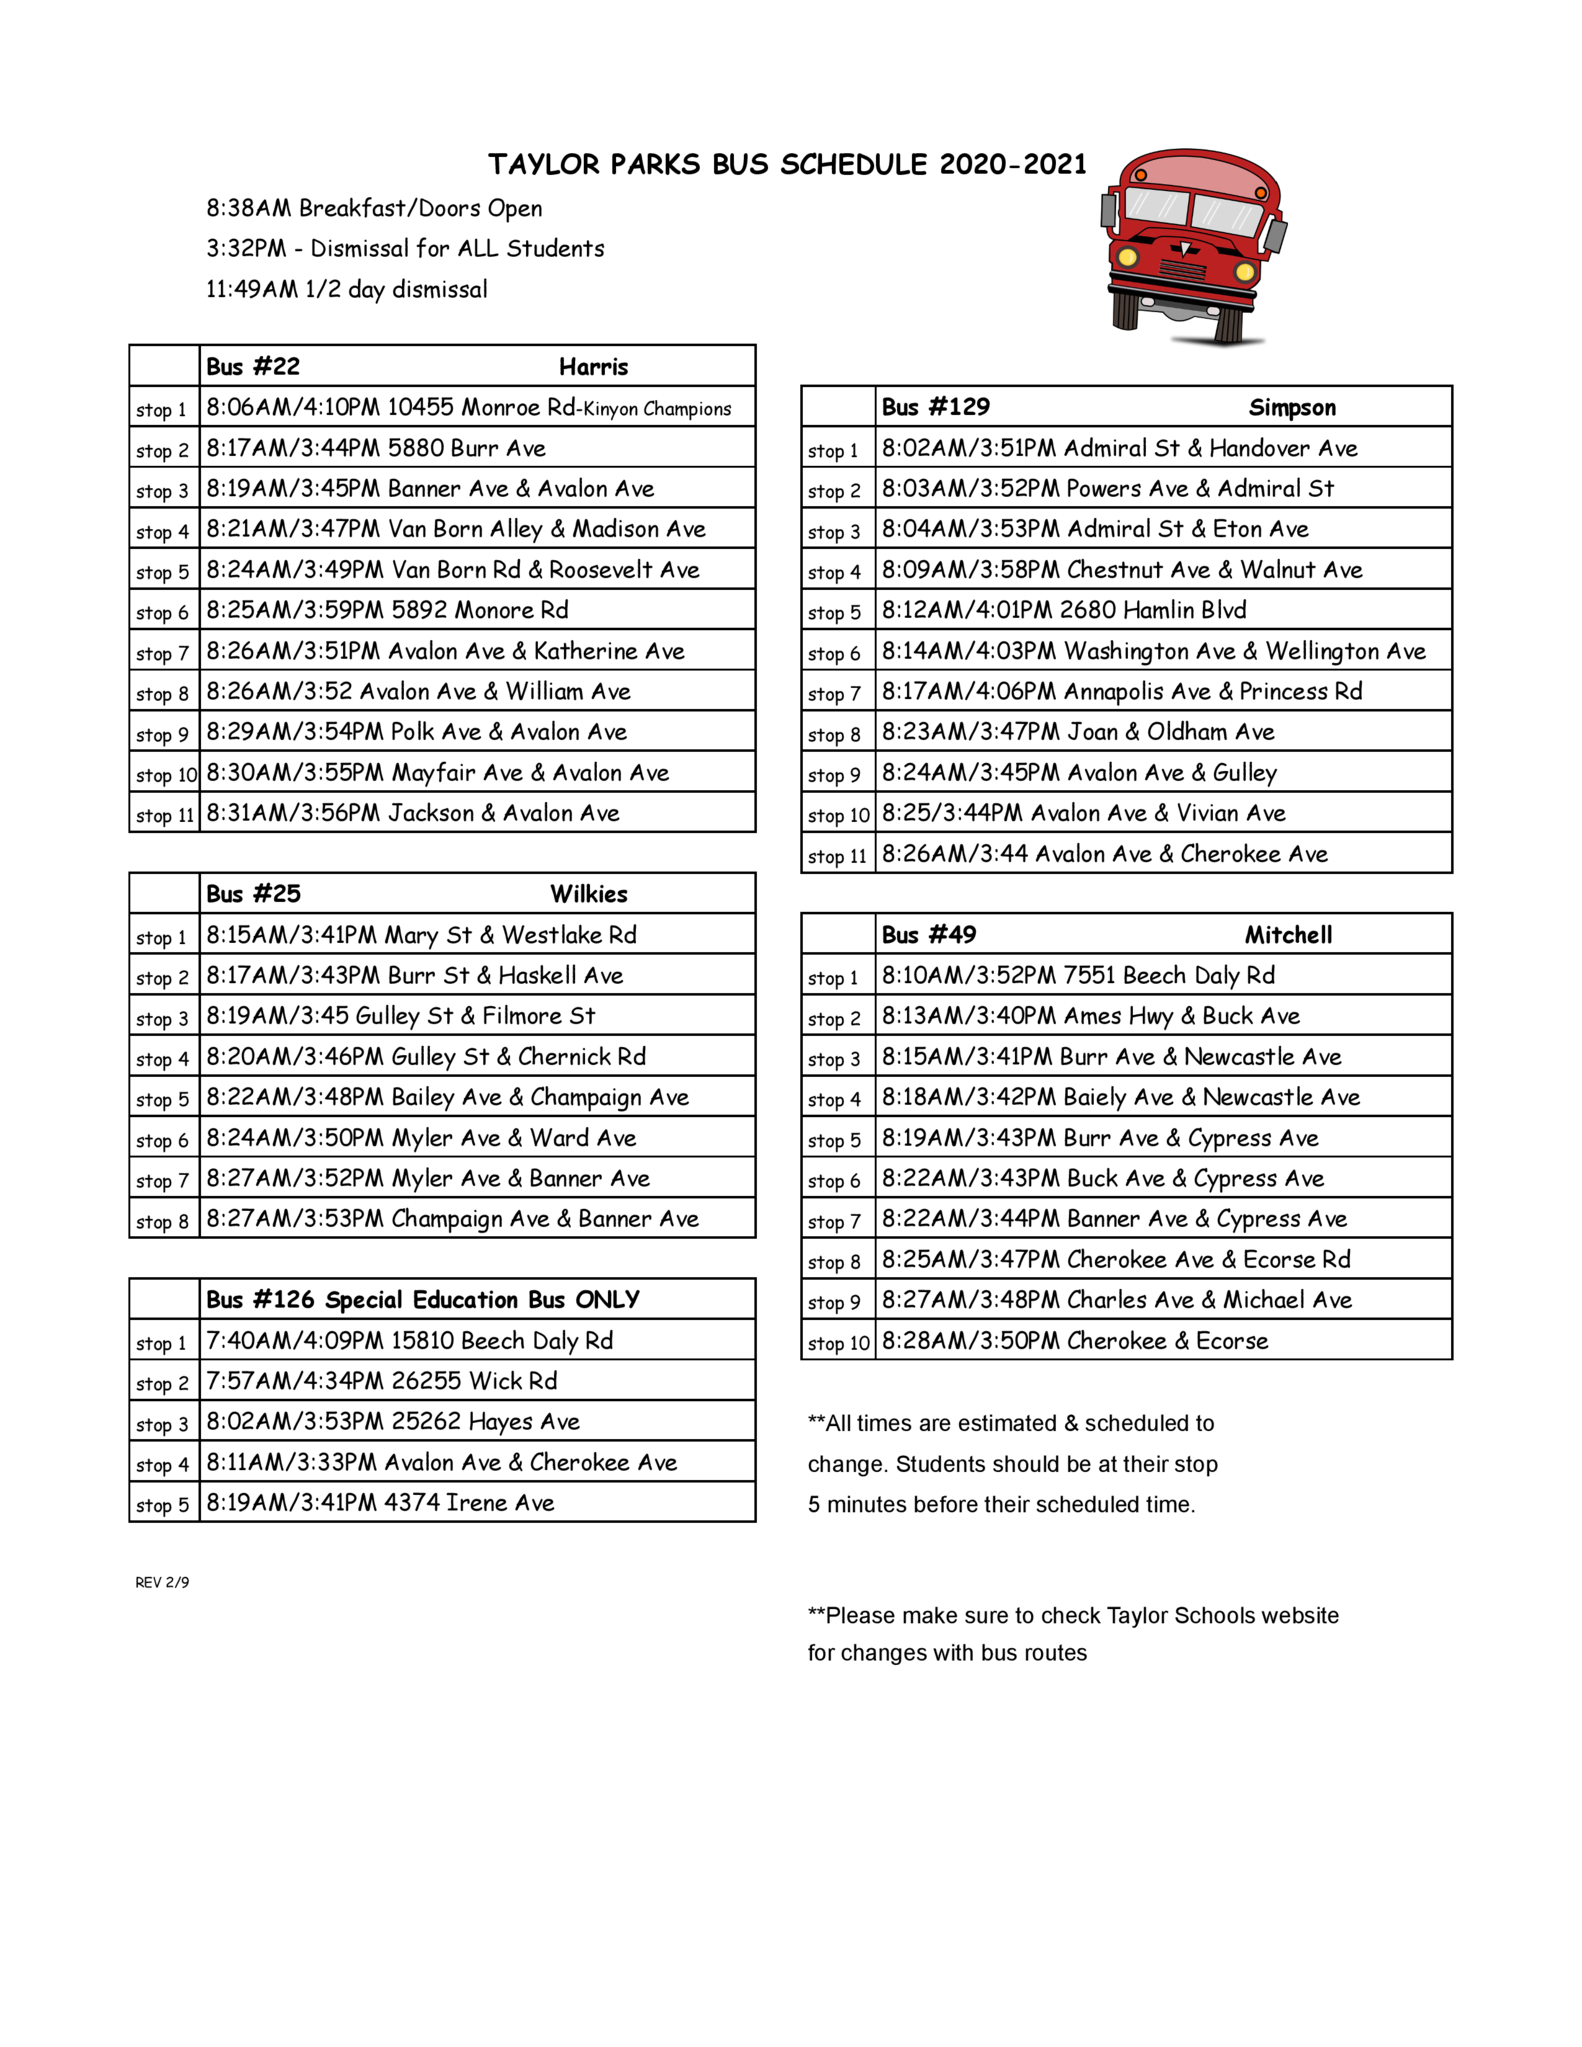 Taylor Parks Bus Schedule 2020-2021